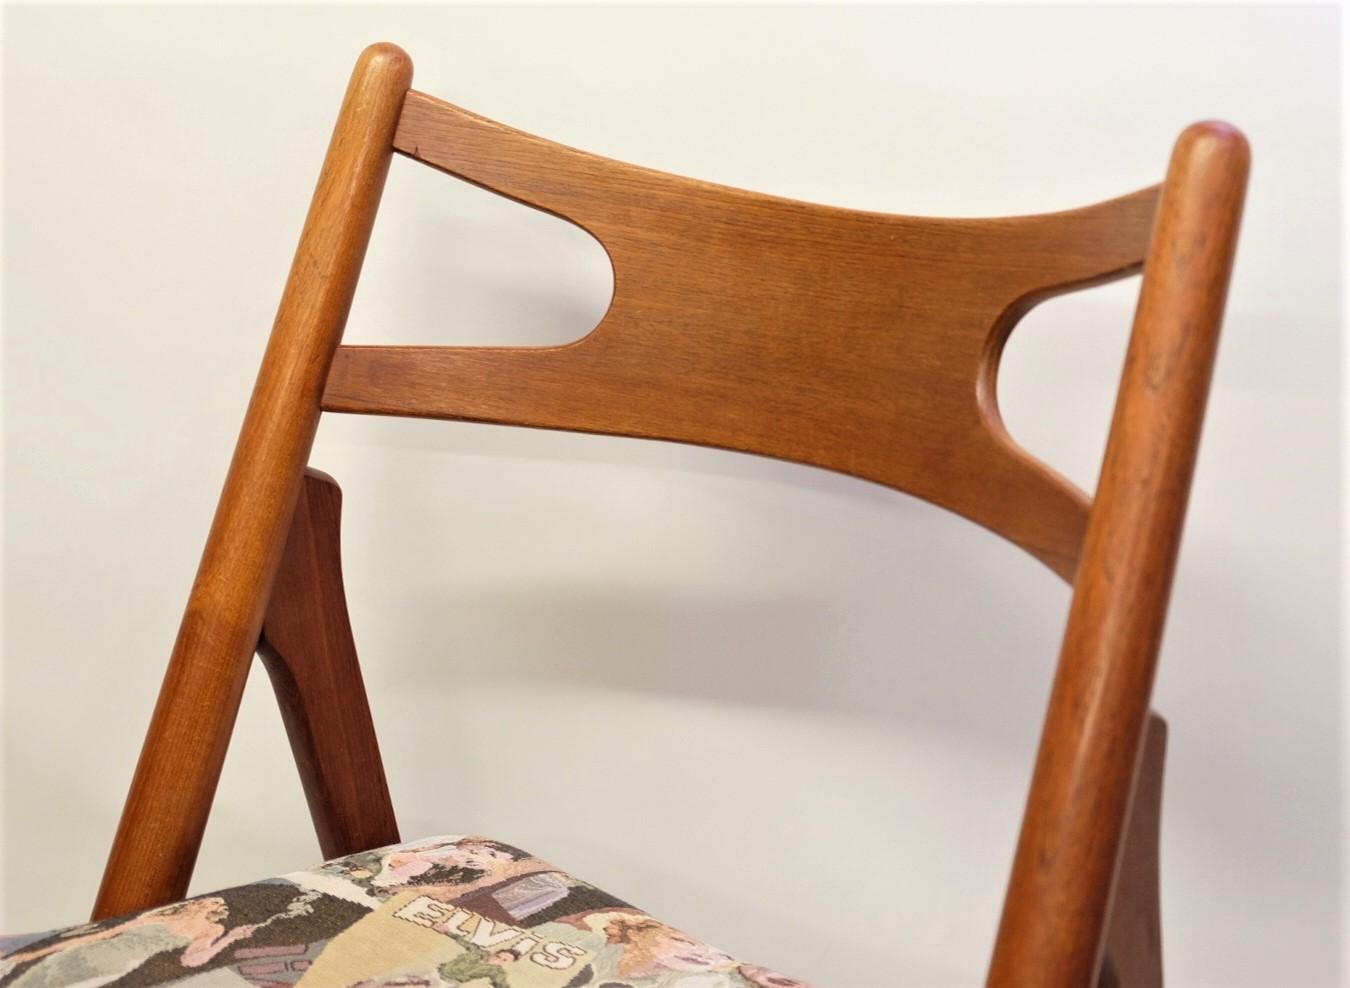 Hans J. Wegner Mid-Century Sawbuck Dining Chair CH29 Teak for Carl Hansen & Son For Sale 6